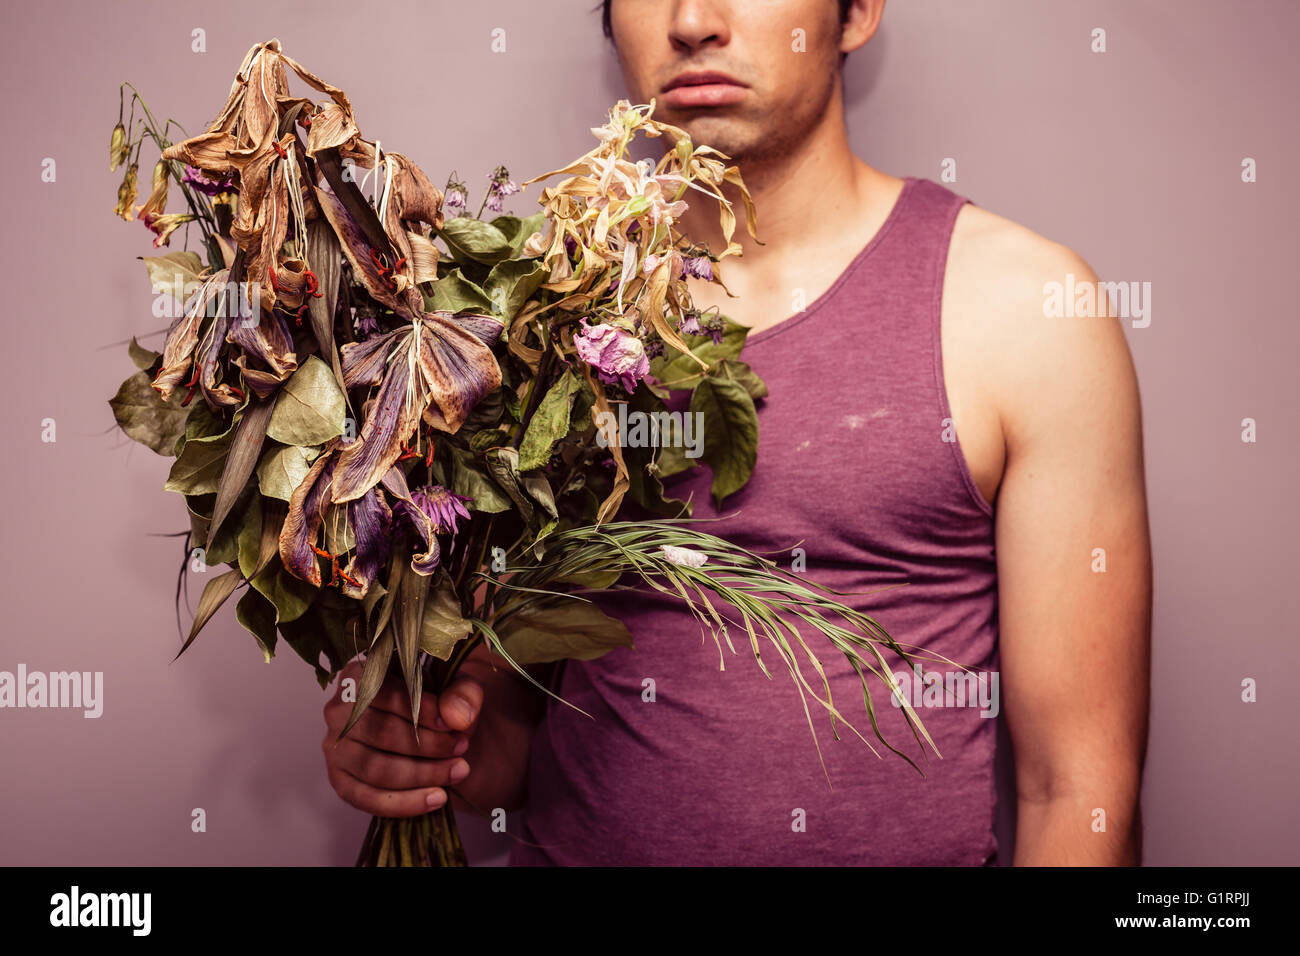 Un jeune homme triste tient un bouquet de fleurs fanées et mortes Banque D'Images